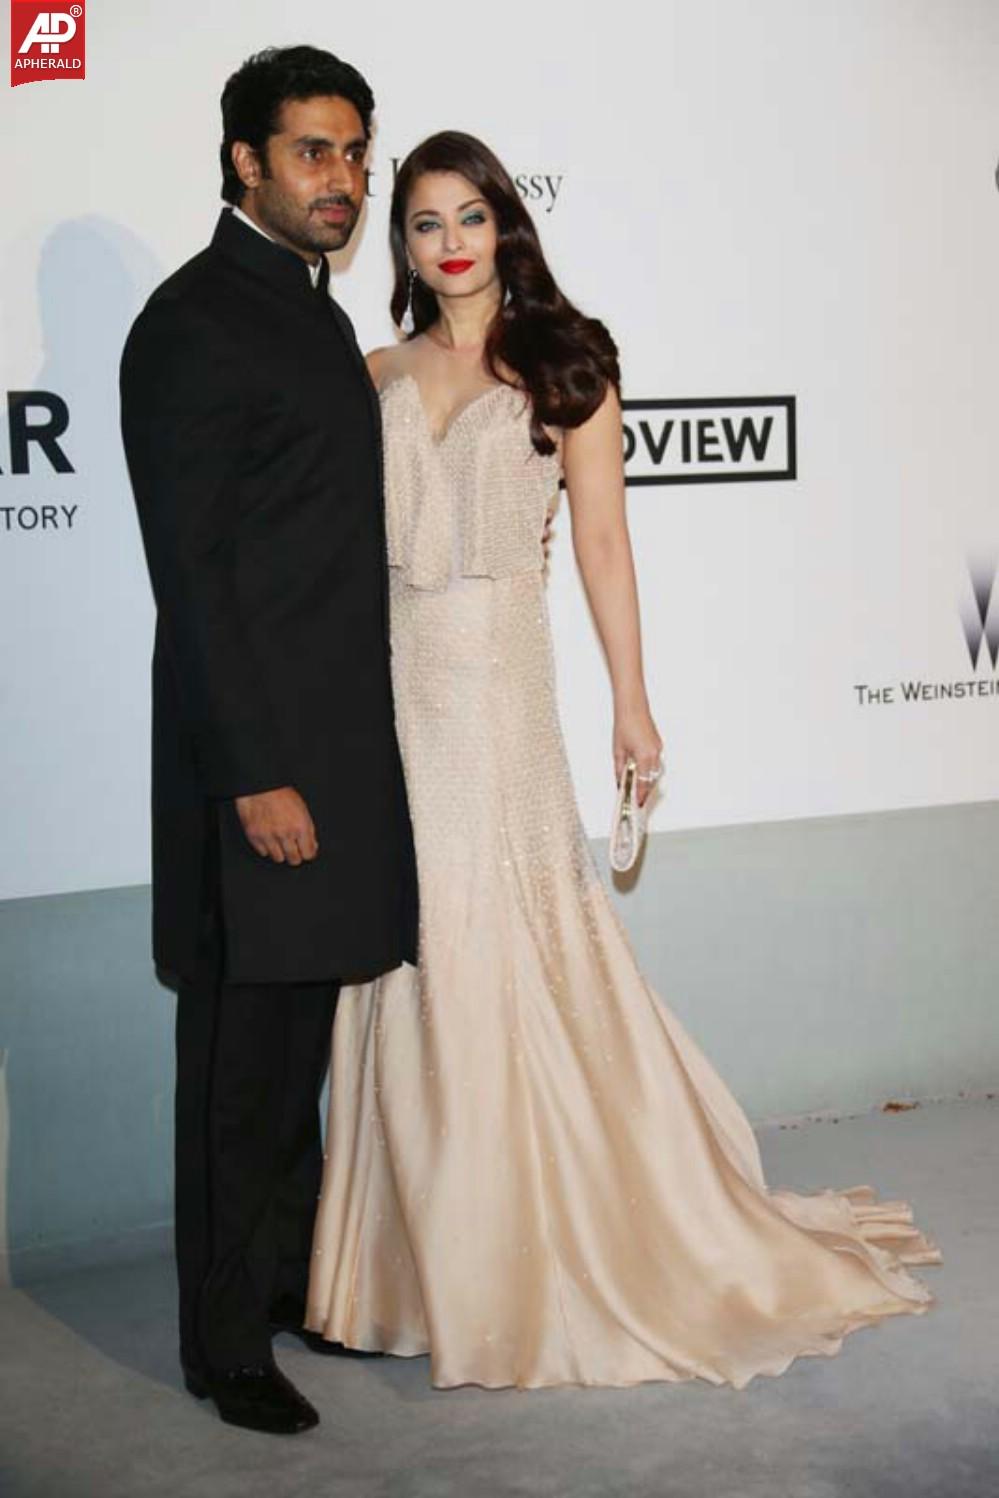 Aishwarya Rai and Abhishek Bachchan at Cannes 2014 Photos